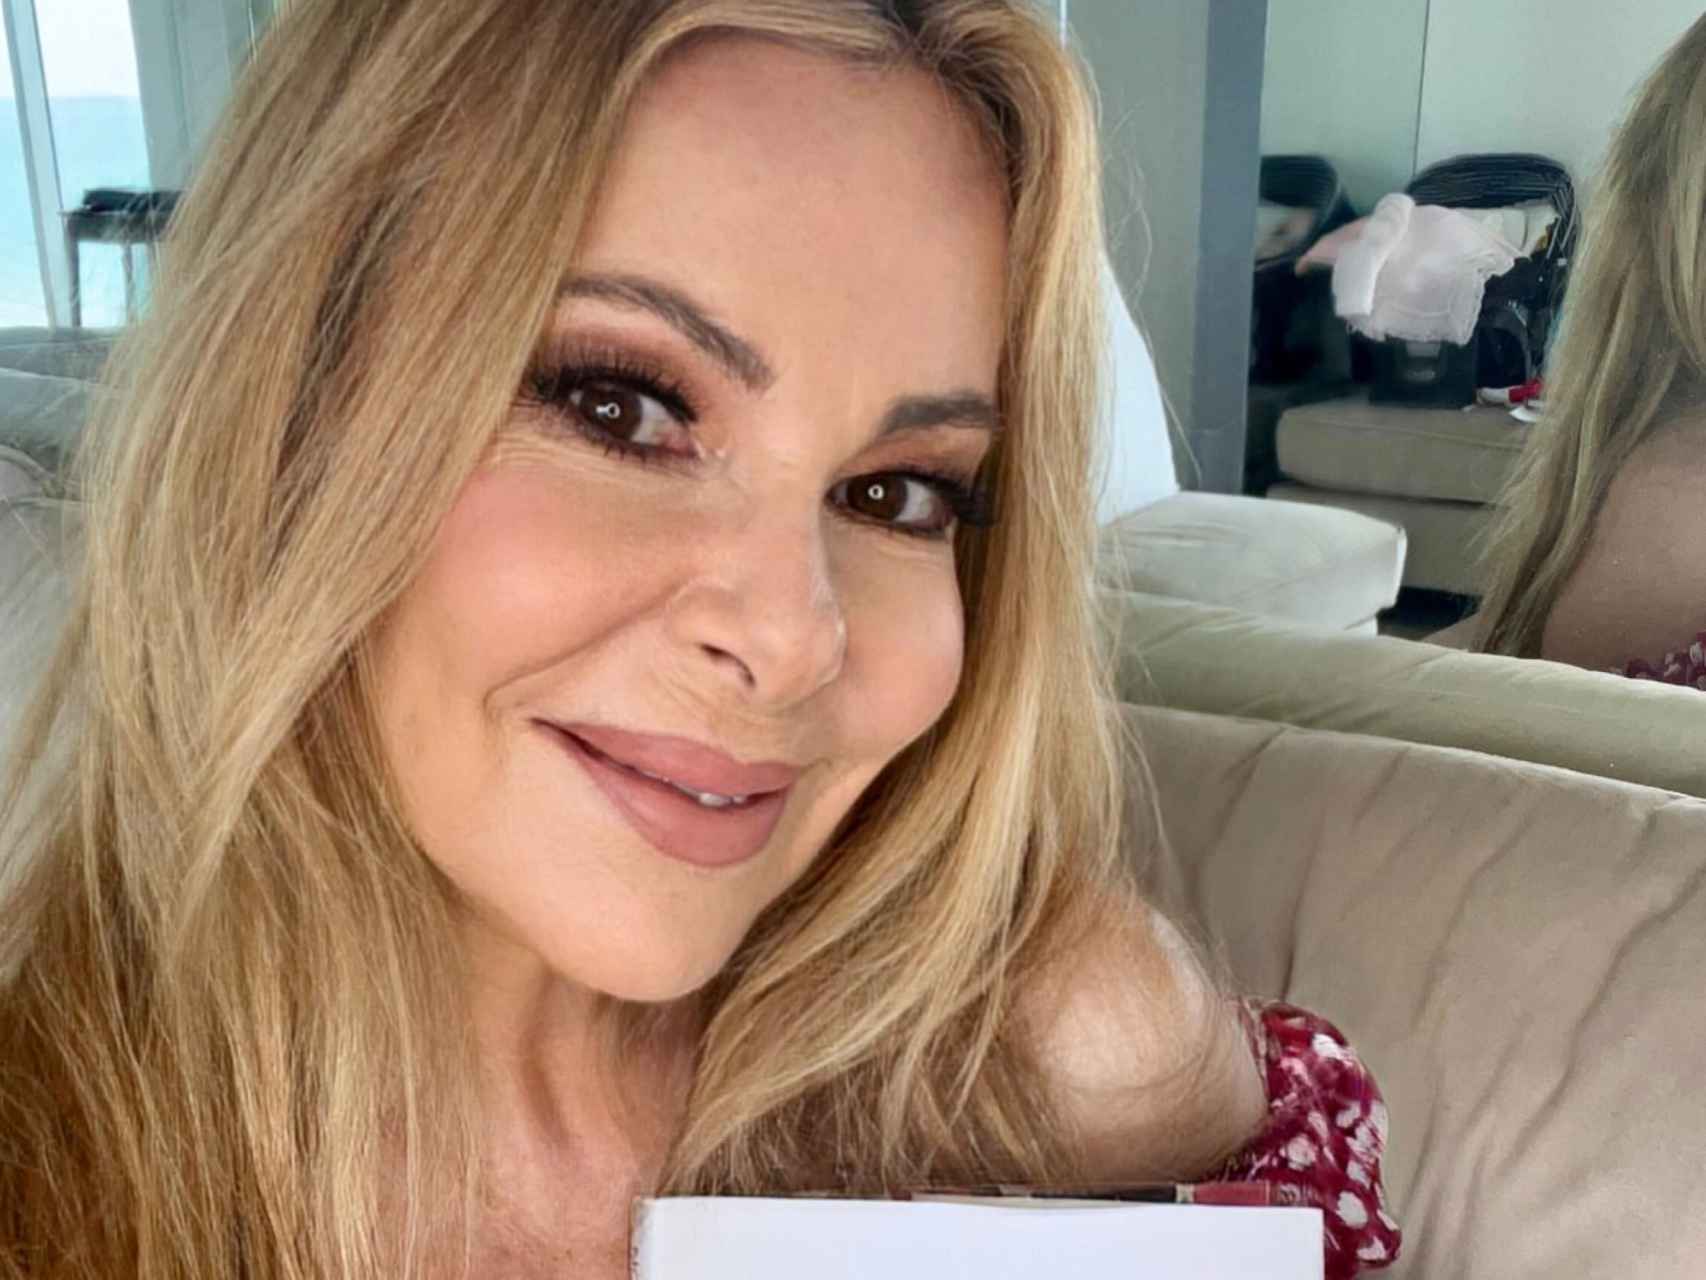 La actriz y presentadora Ana García Obregón en una imagen de sus redes sociales, tomada en Miami.